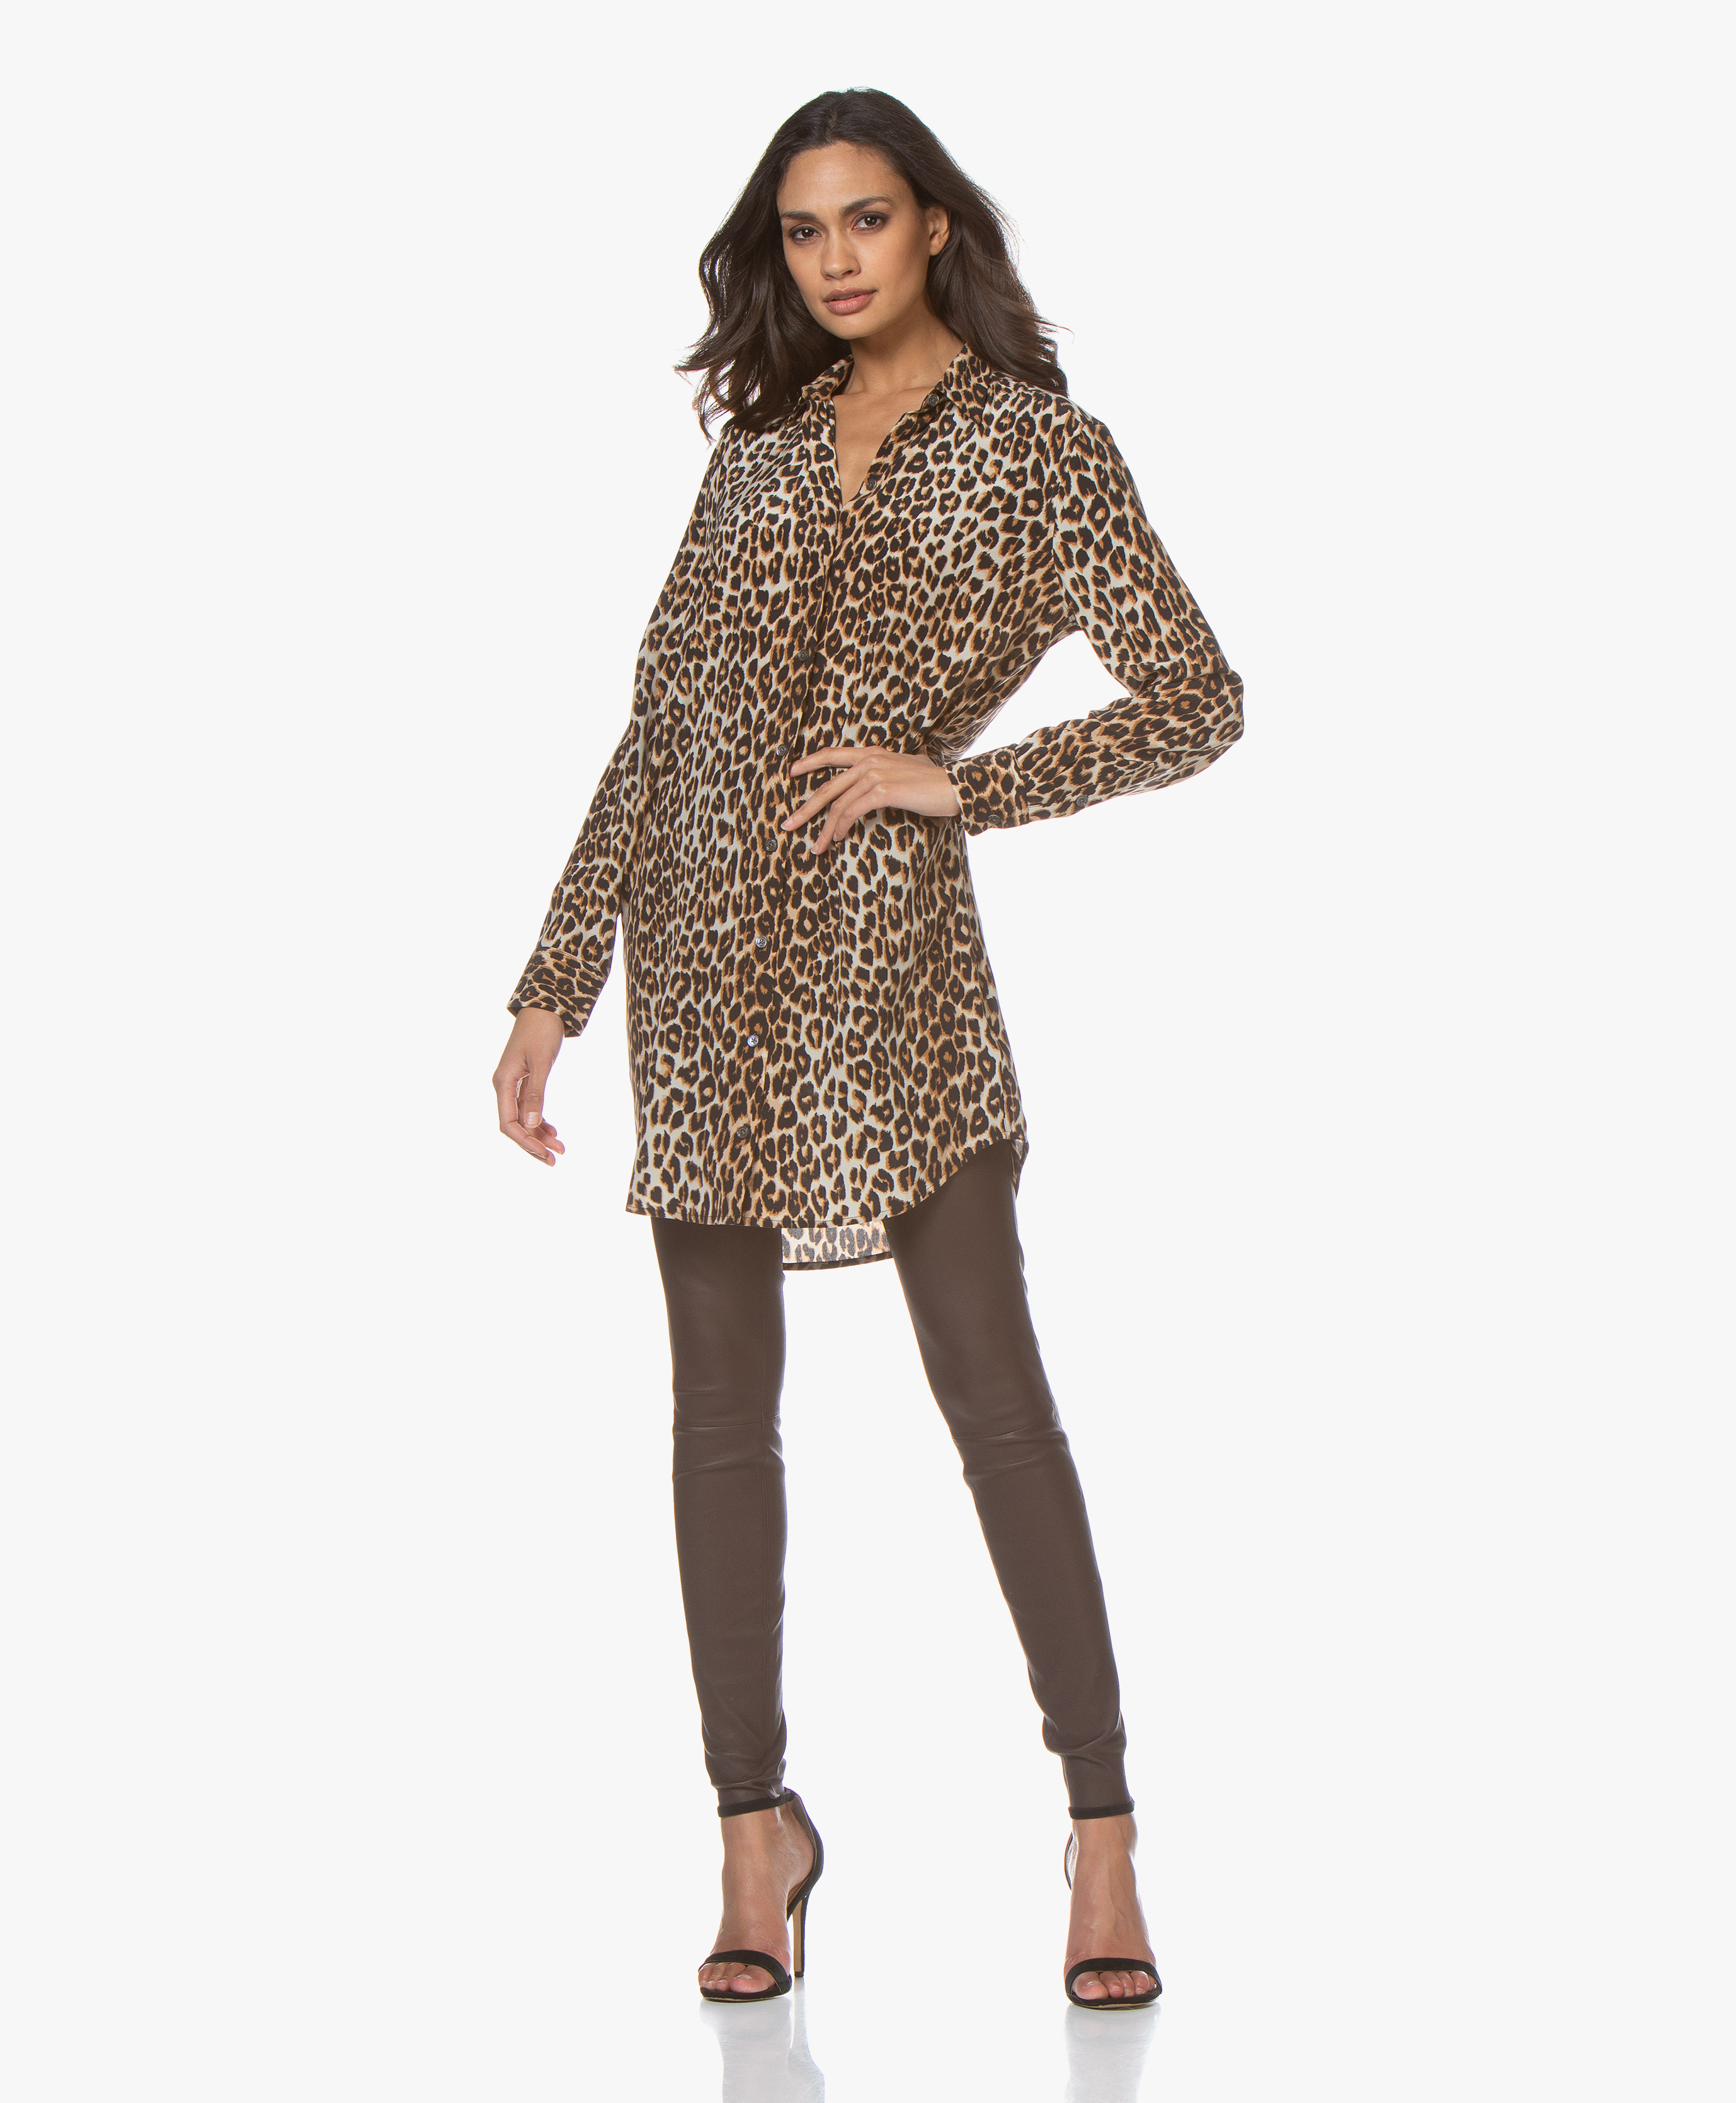 shirt dress leopard